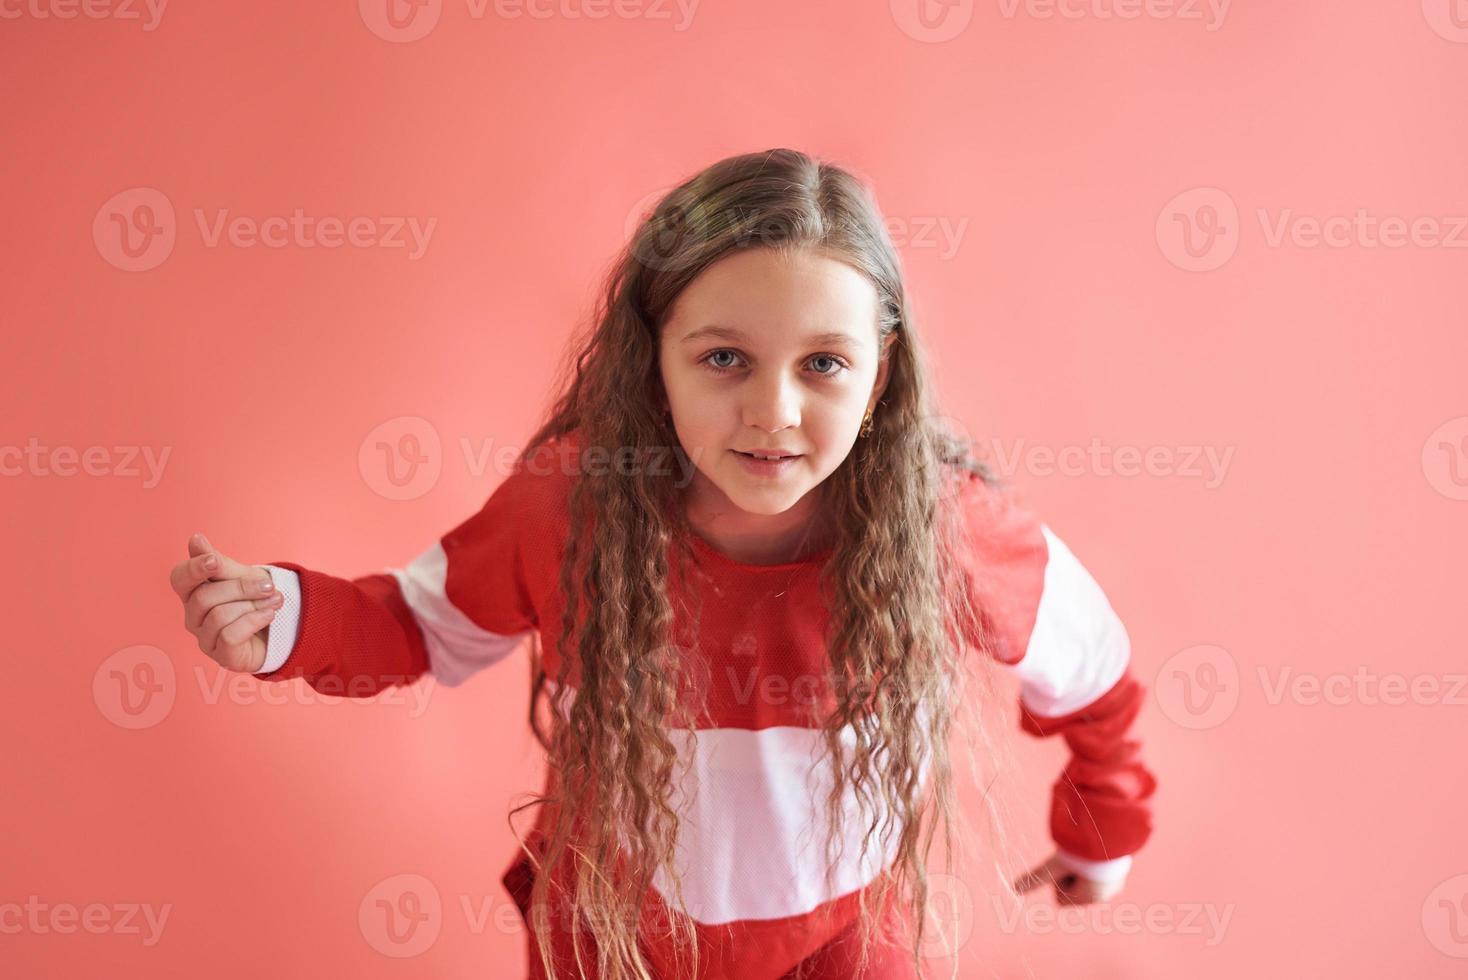 jong mooi schattig meisje dansen op rode achtergrond, moderne slanke hiphop-stijl tienermeisje springen foto